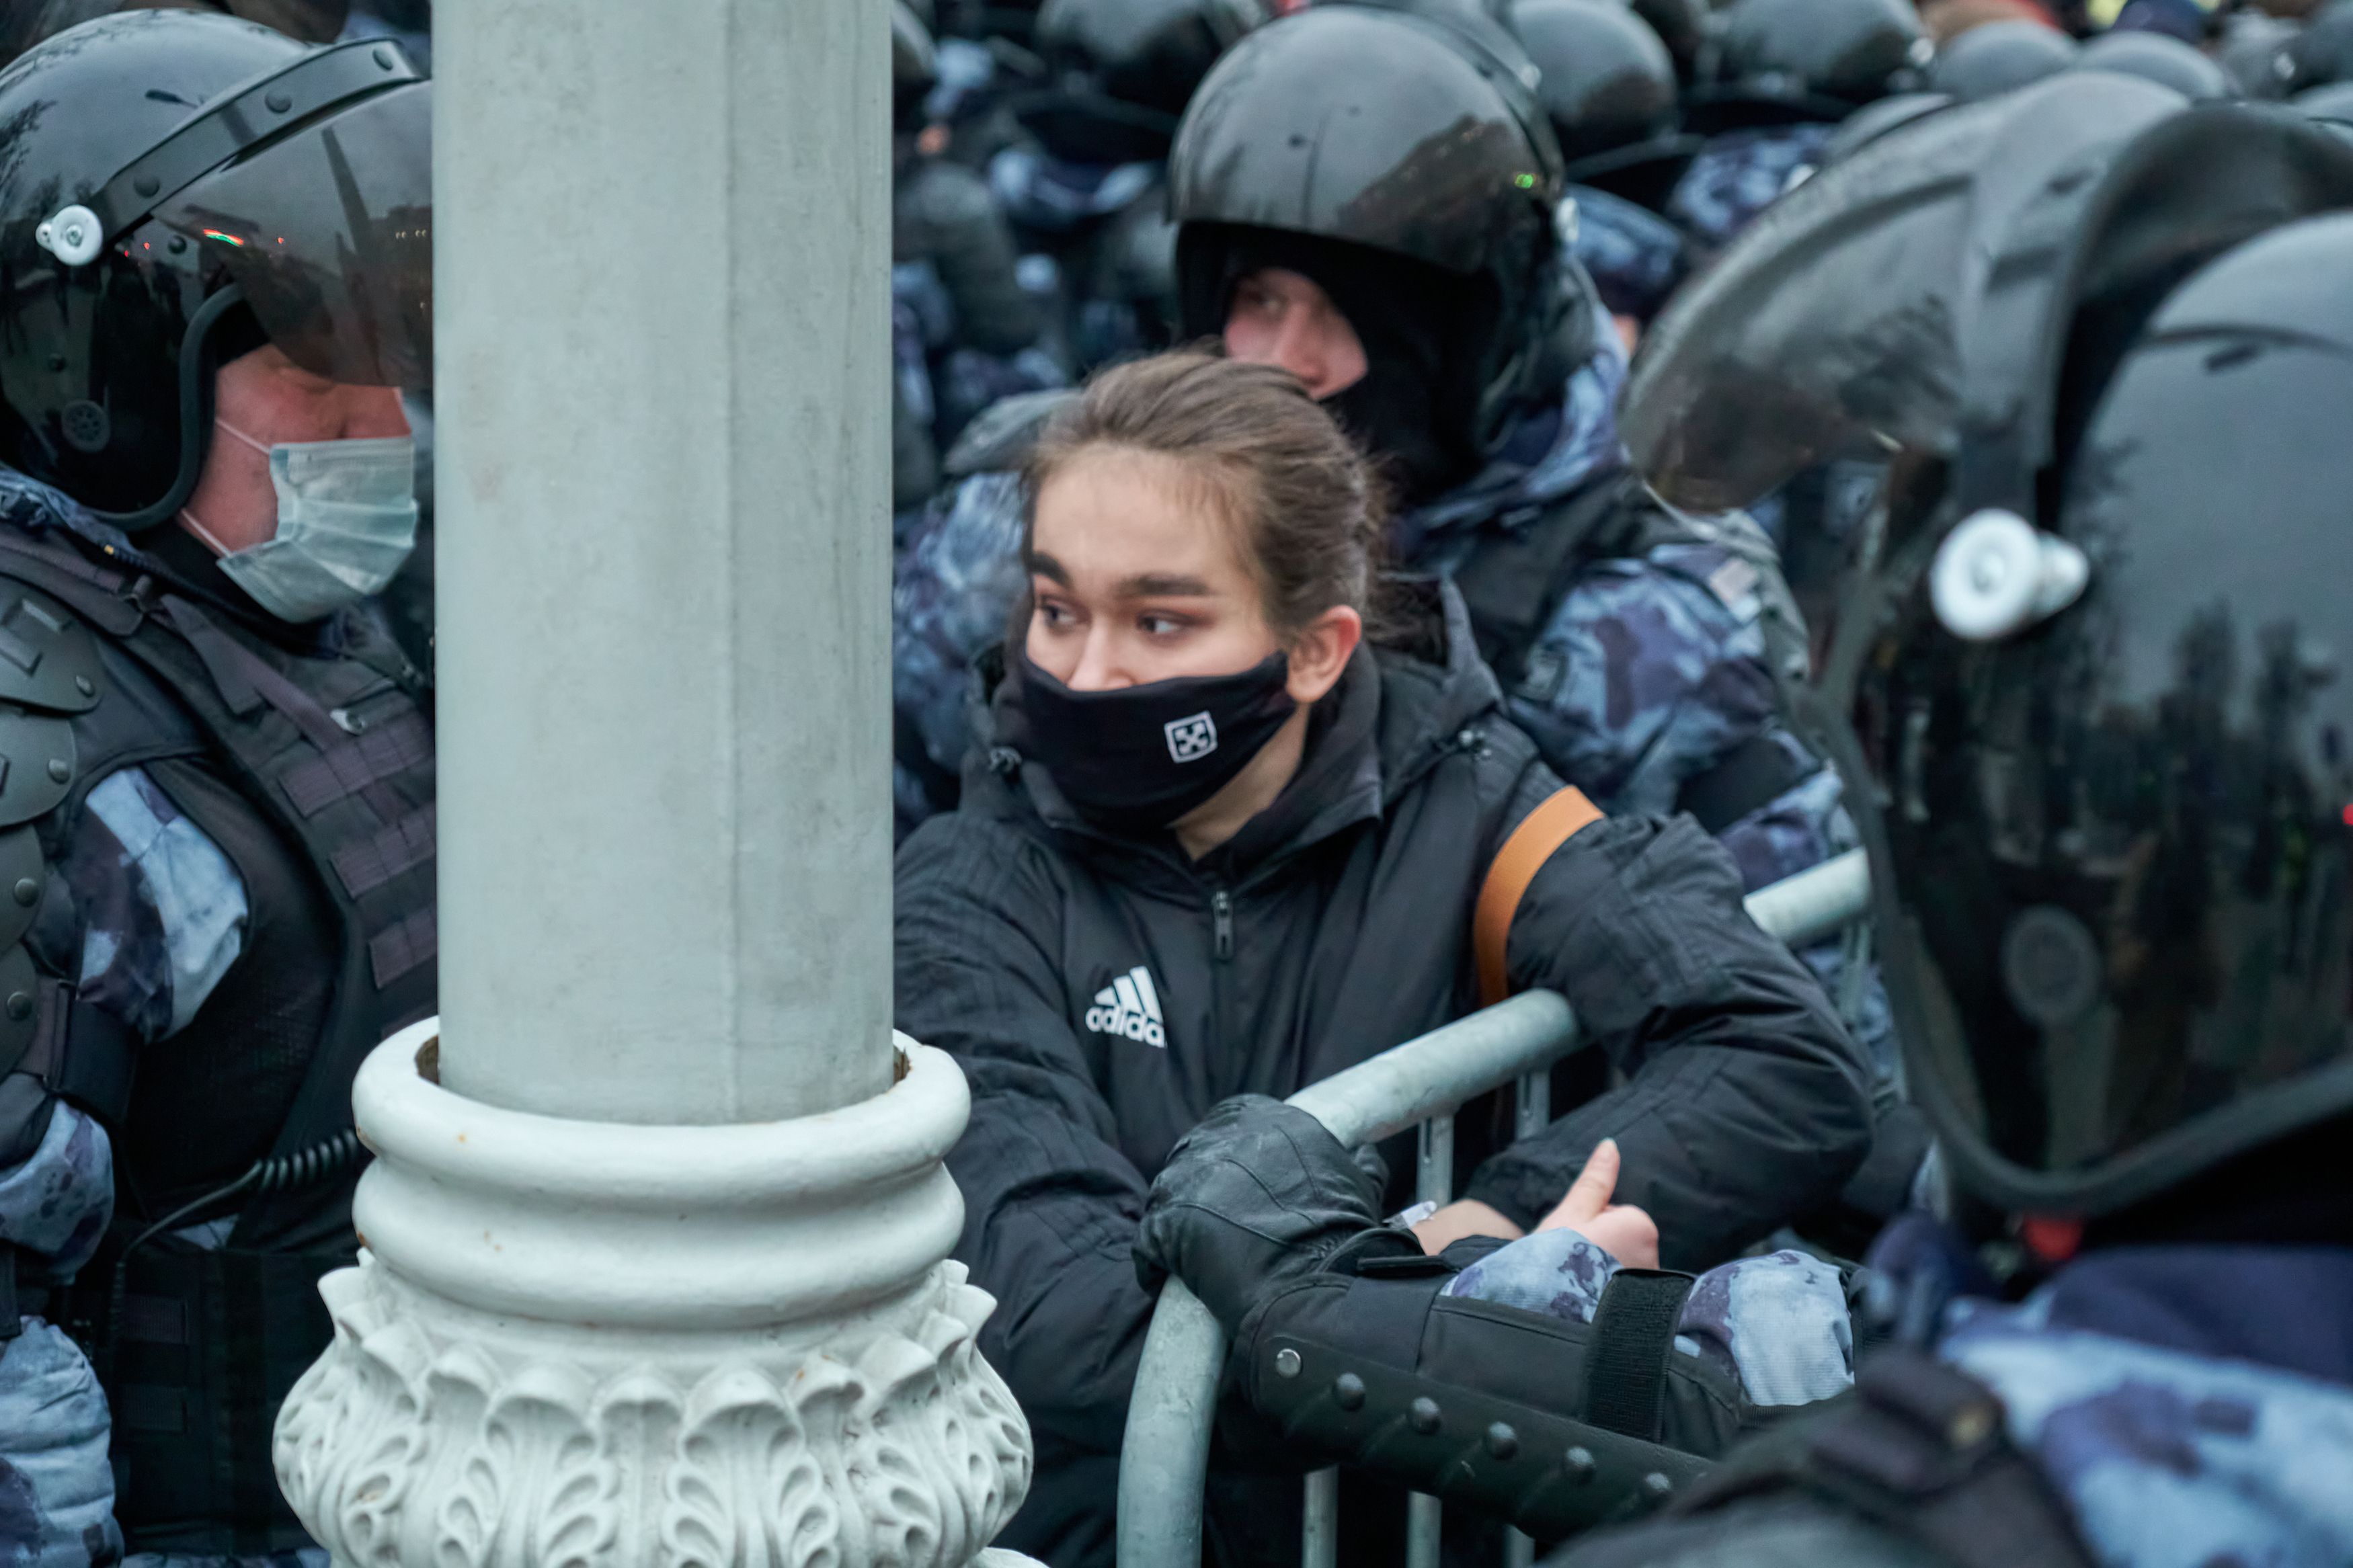 митинг, Навальный, ОМОН, женщина, протест, уличное противостояние, борьба, , Siergiejevicz Mihail